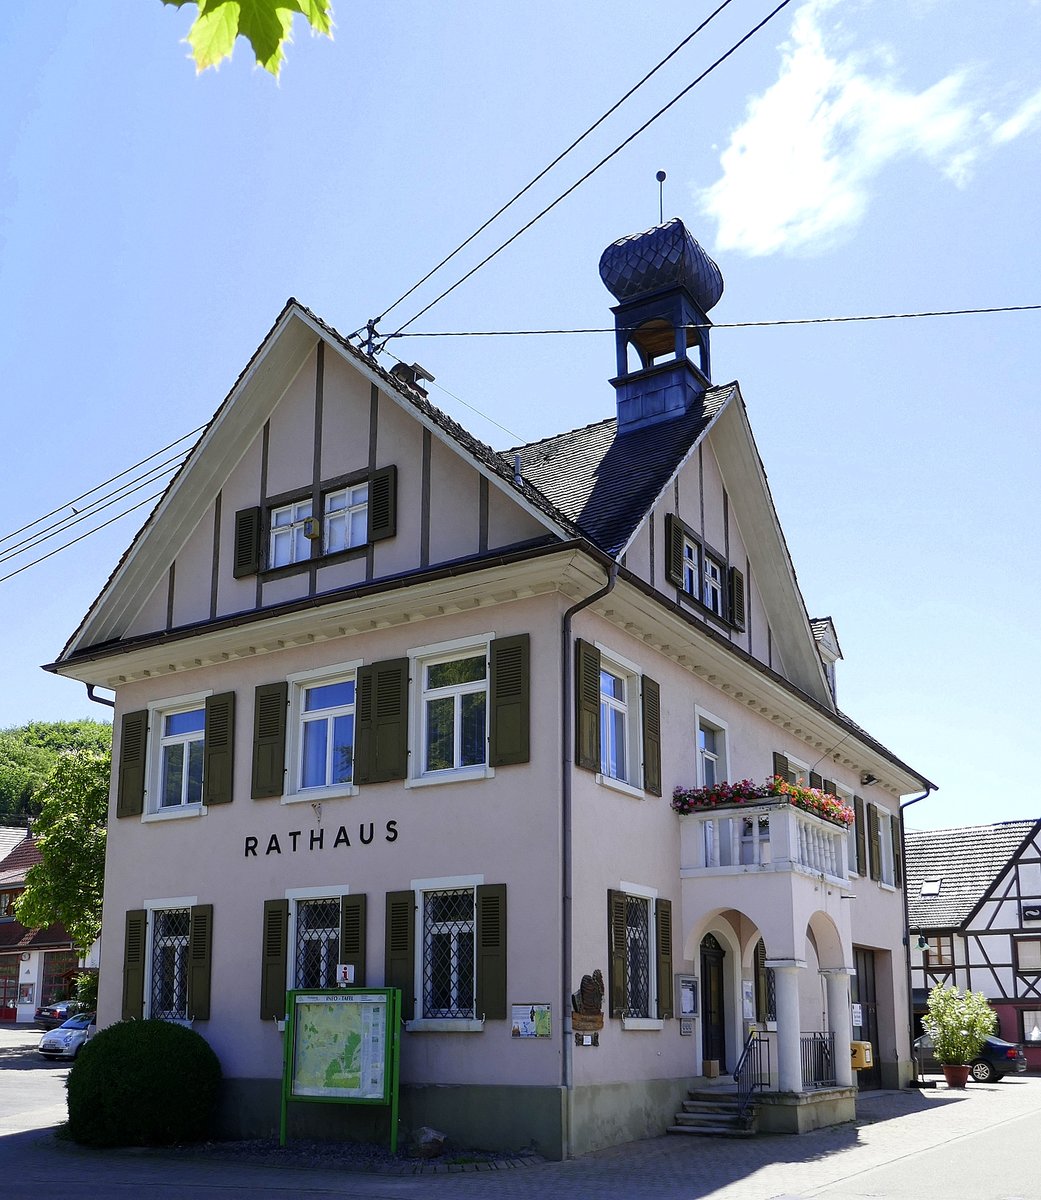 Diersburg, OT von Hohberg, das Rathaus der ca.1600 Einwohner zählenden Gemeinde in der Ortenau, im Rathaus befindet sich seit 1982 ein Bienenmuseum, Juni 2020